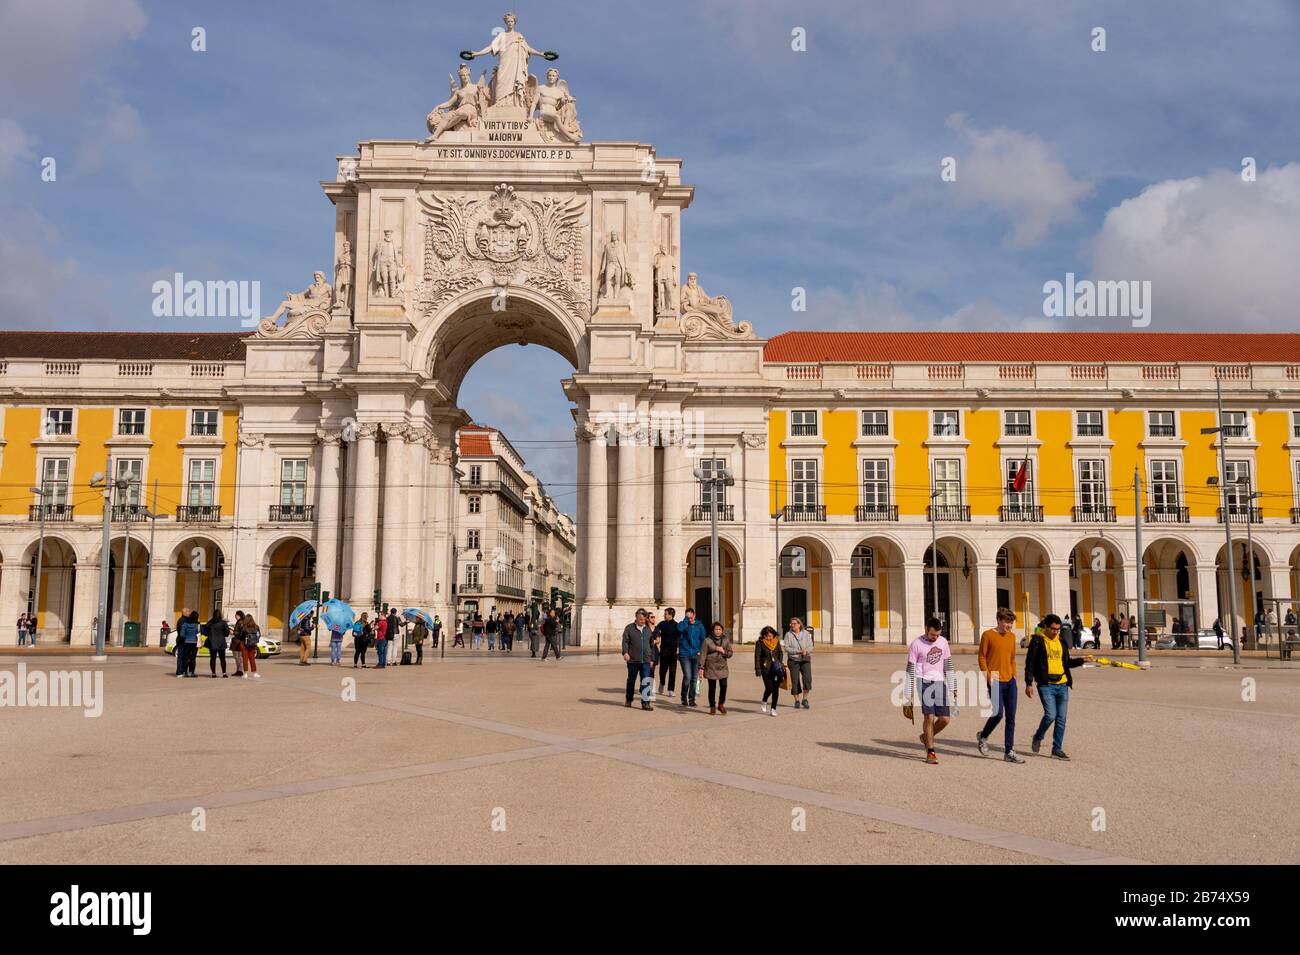 Lisbon, Portugal - 2 March 2020: Arco da Rua Augusta at the Praca do Comercio Stock Photo